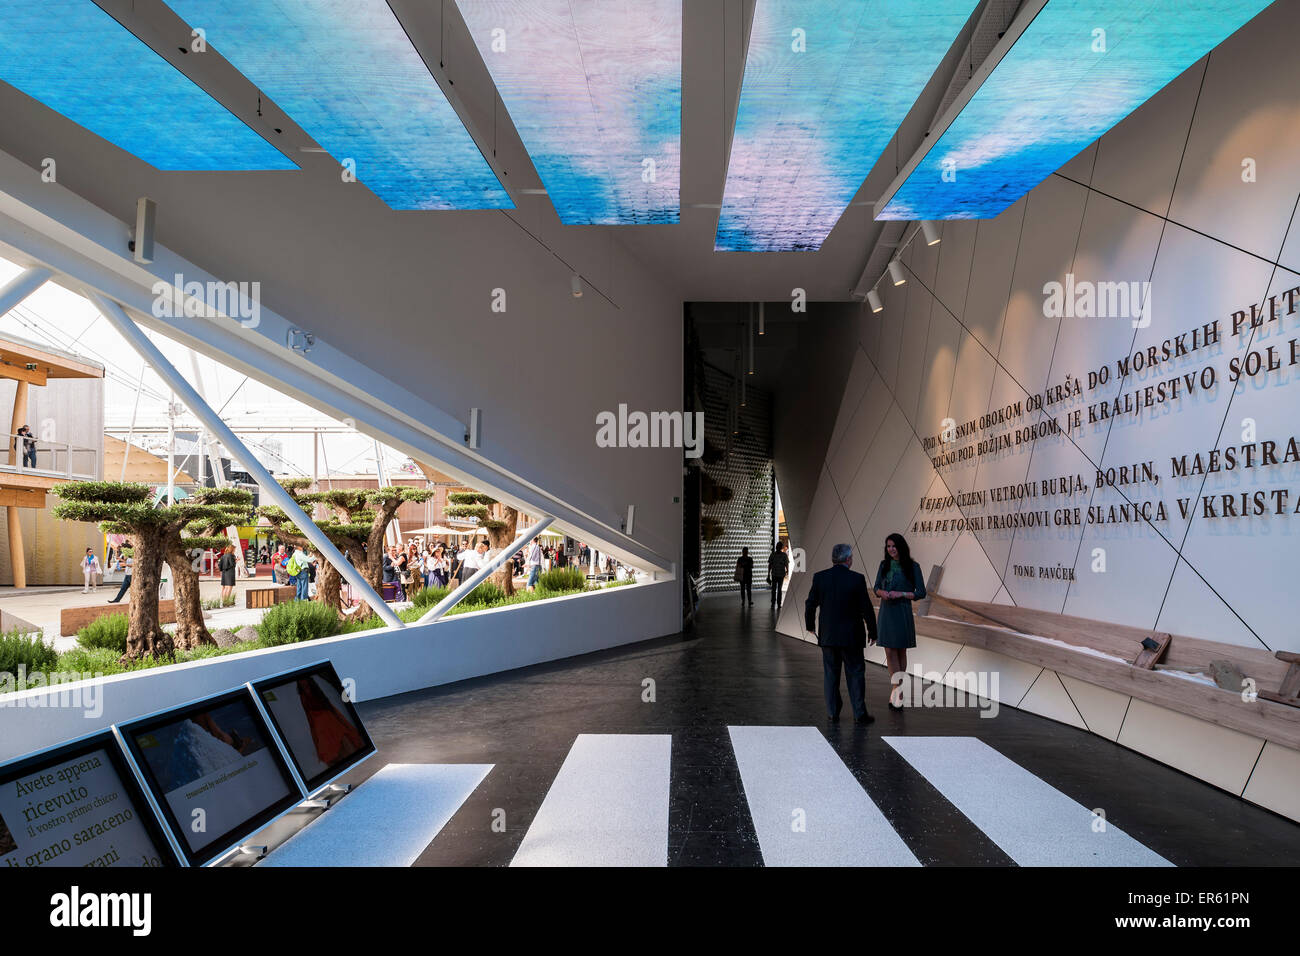 Unter dem Motto Ausstellungsraum mit Blick durch Fenster Mailand Expo 2015 Slowenien Pavillon Mailand Italien Architekt SoNo Arhitekti 20 Stockfoto